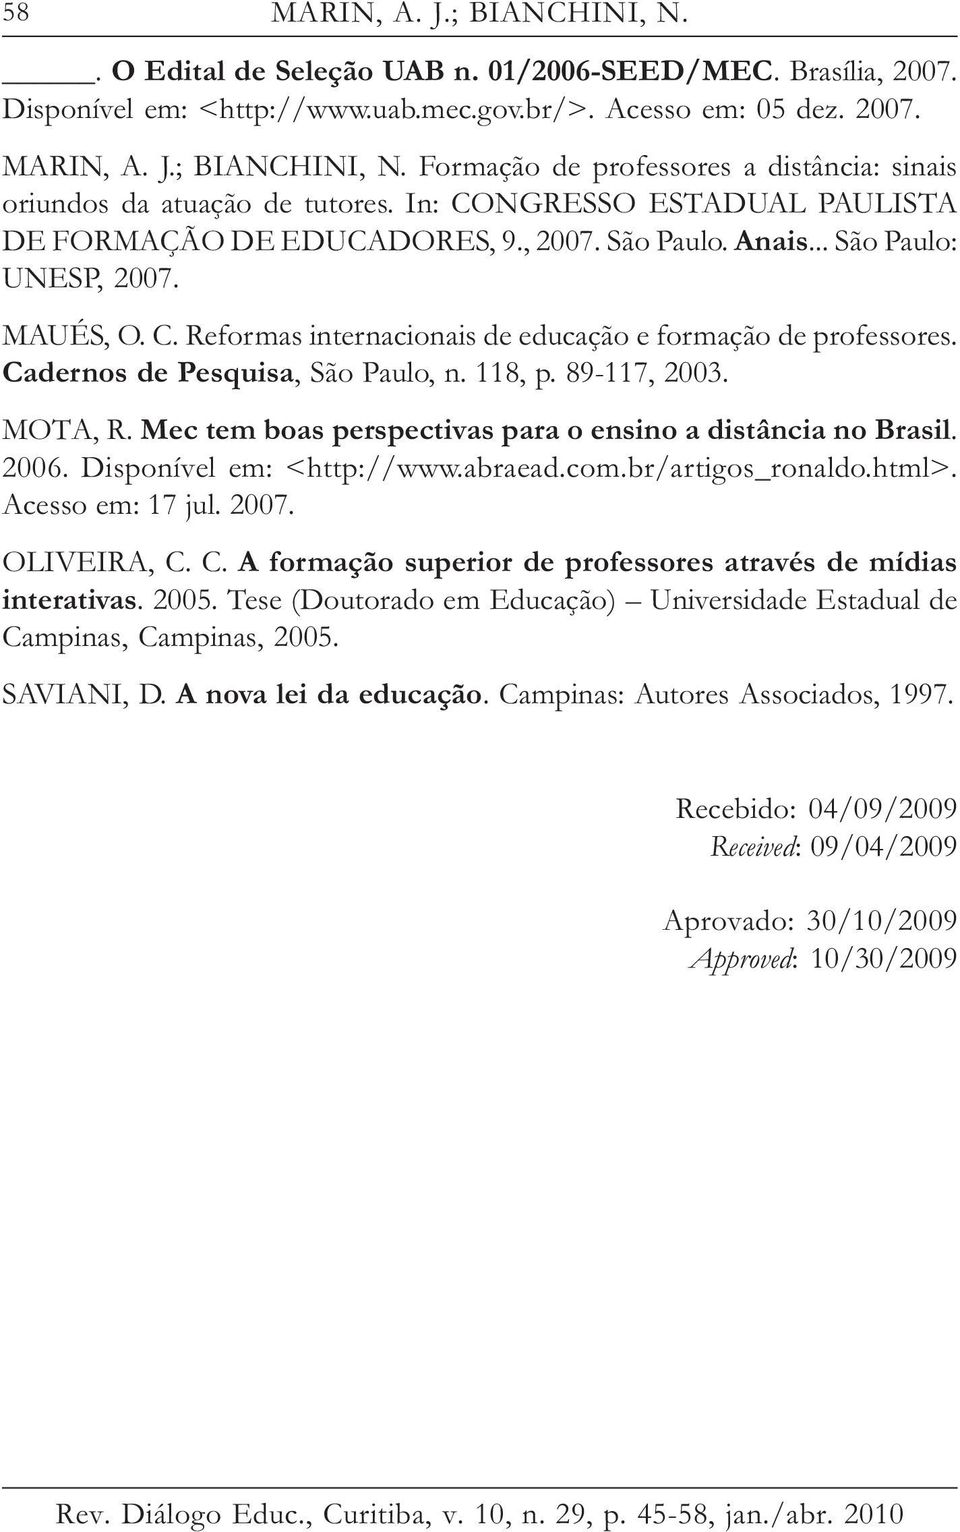 Cadernos de Pesquisa, São Paulo, n. 118, p. 89-117, 2003. MOTA, R. Mec tem boas perspectivas para o ensino a distância no Brasil. 2006. Disponível em: <http://www.abraead.com.br/artigos_ronaldo.html>.